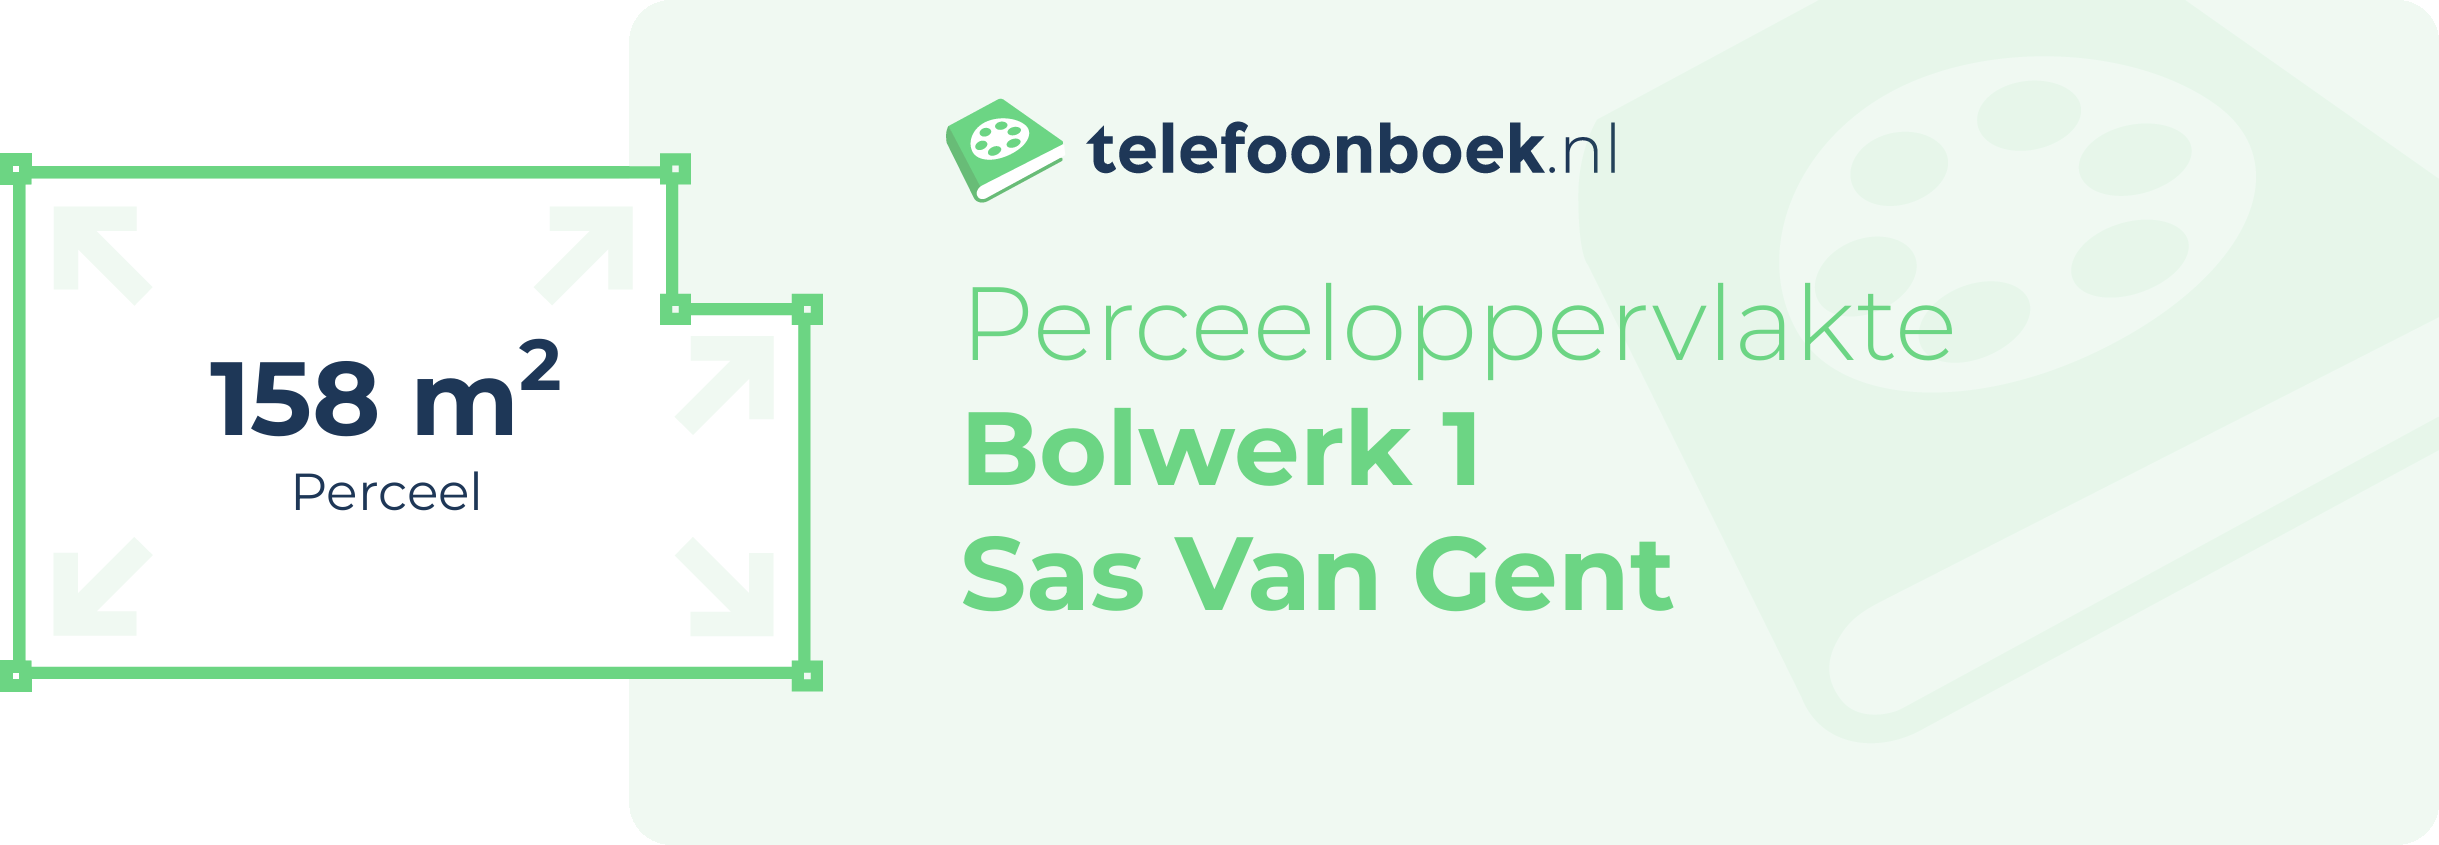 Perceeloppervlakte Bolwerk 1 Sas Van Gent